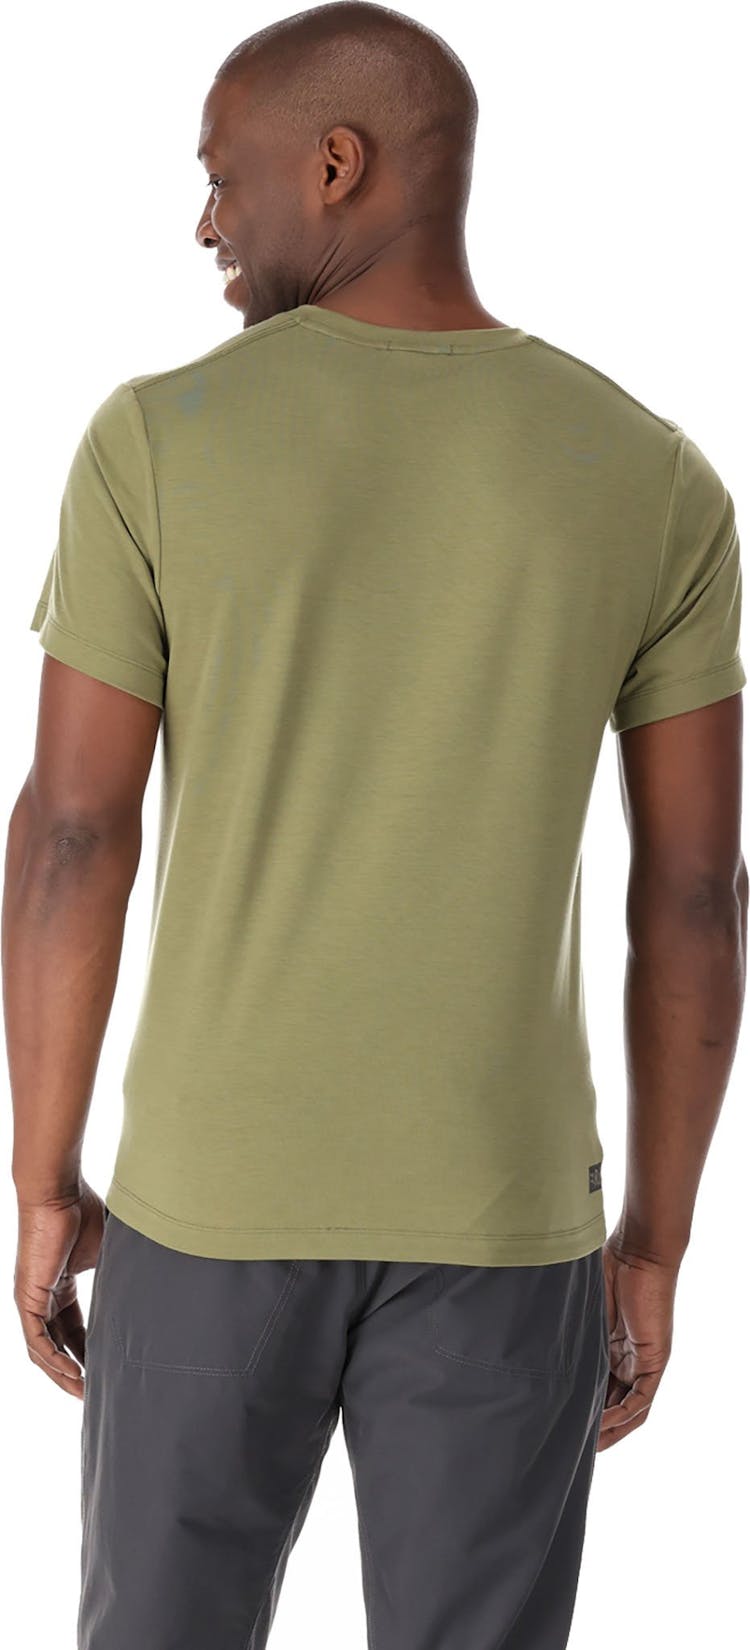 Numéro de l'image de la galerie de produits 3 pour le produit T-shirt latéral - Homme